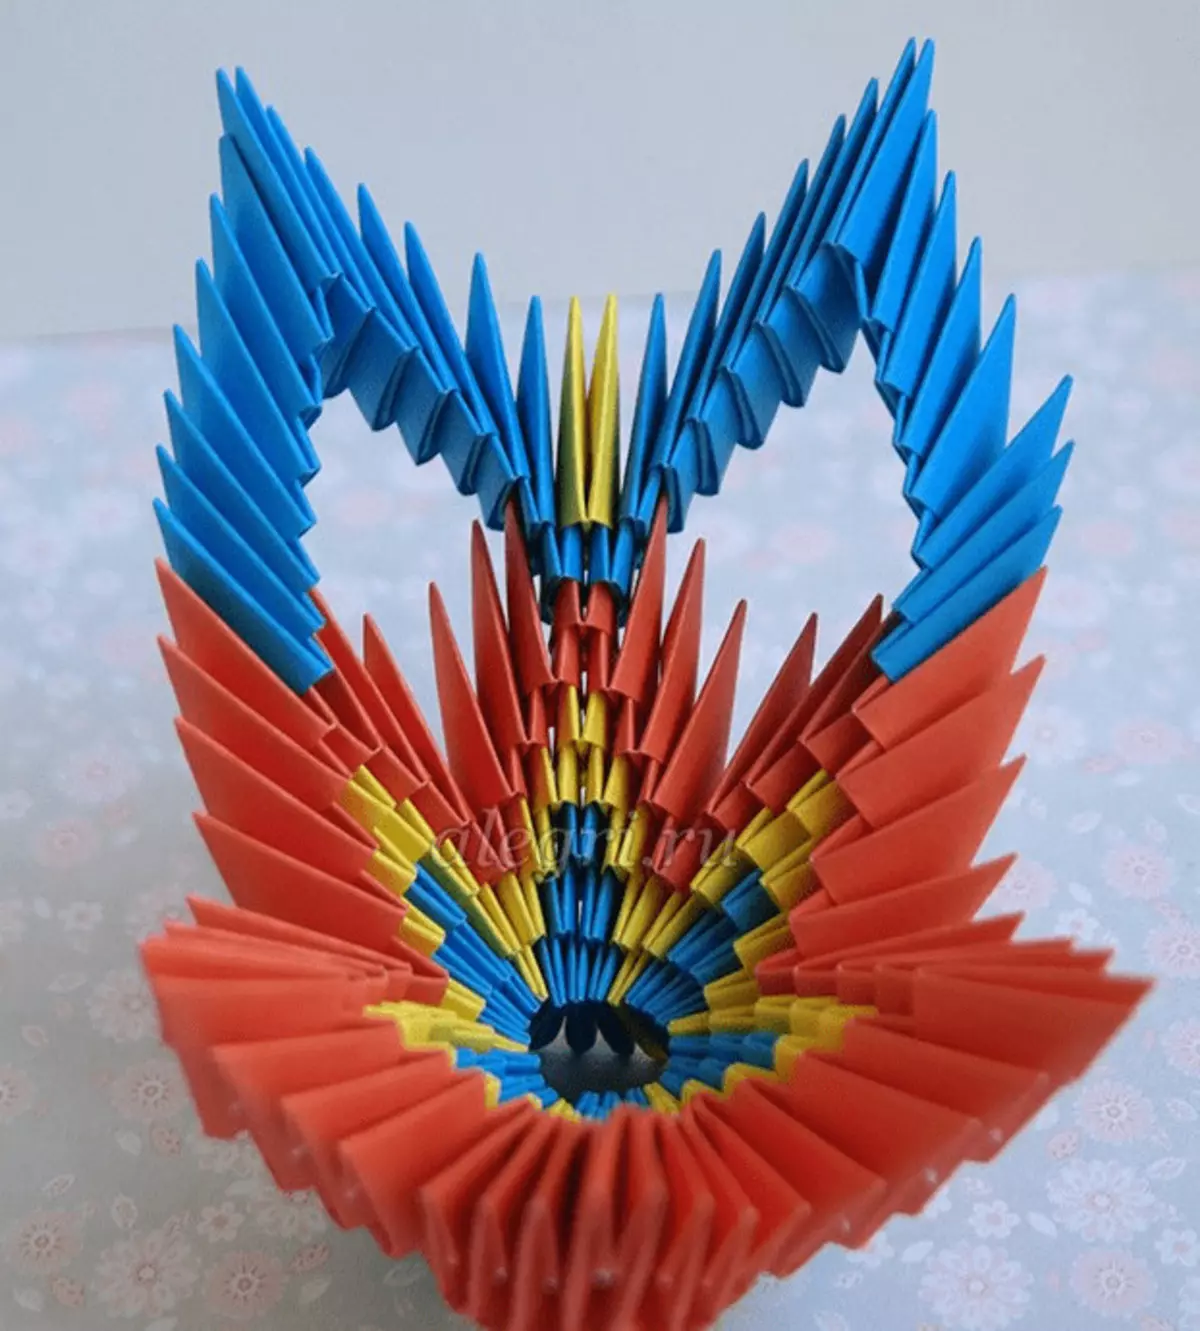 Origami-kwandon: daidaitaccen sassa Origami daga takarda da wani sauki kwandon da hannuwansu. Yadda za a yi a kwandon bisa ga makirci ga yara? 27010_23